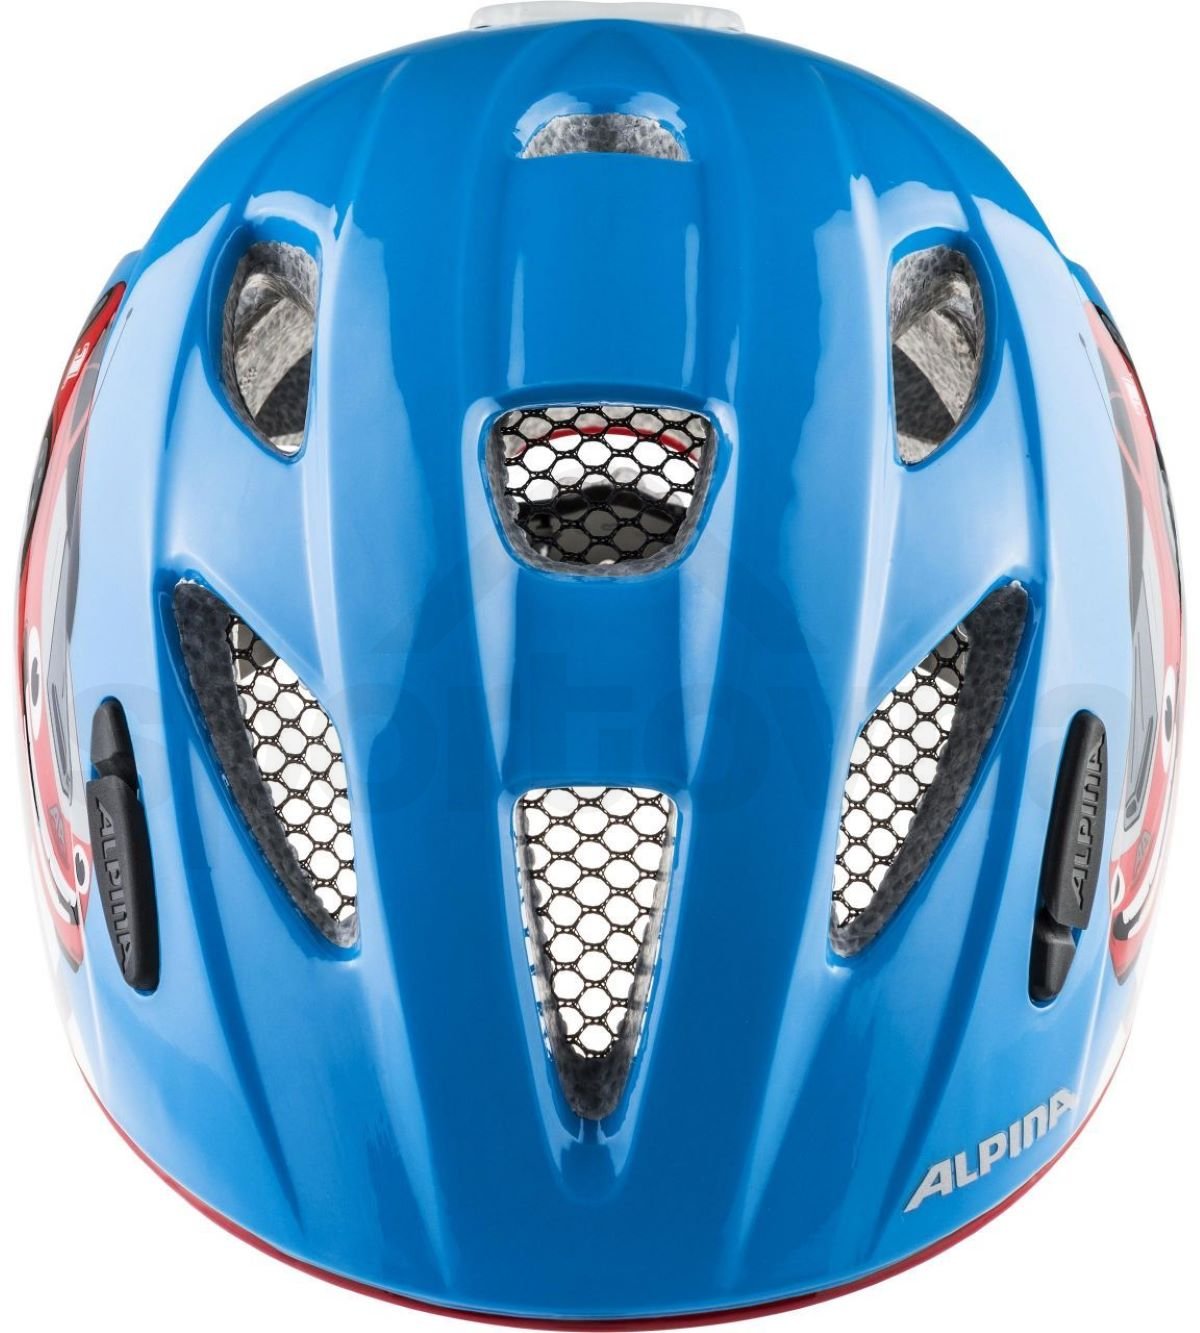 Cyklo helma Alpina Ximo Flash Inmold K - modrá